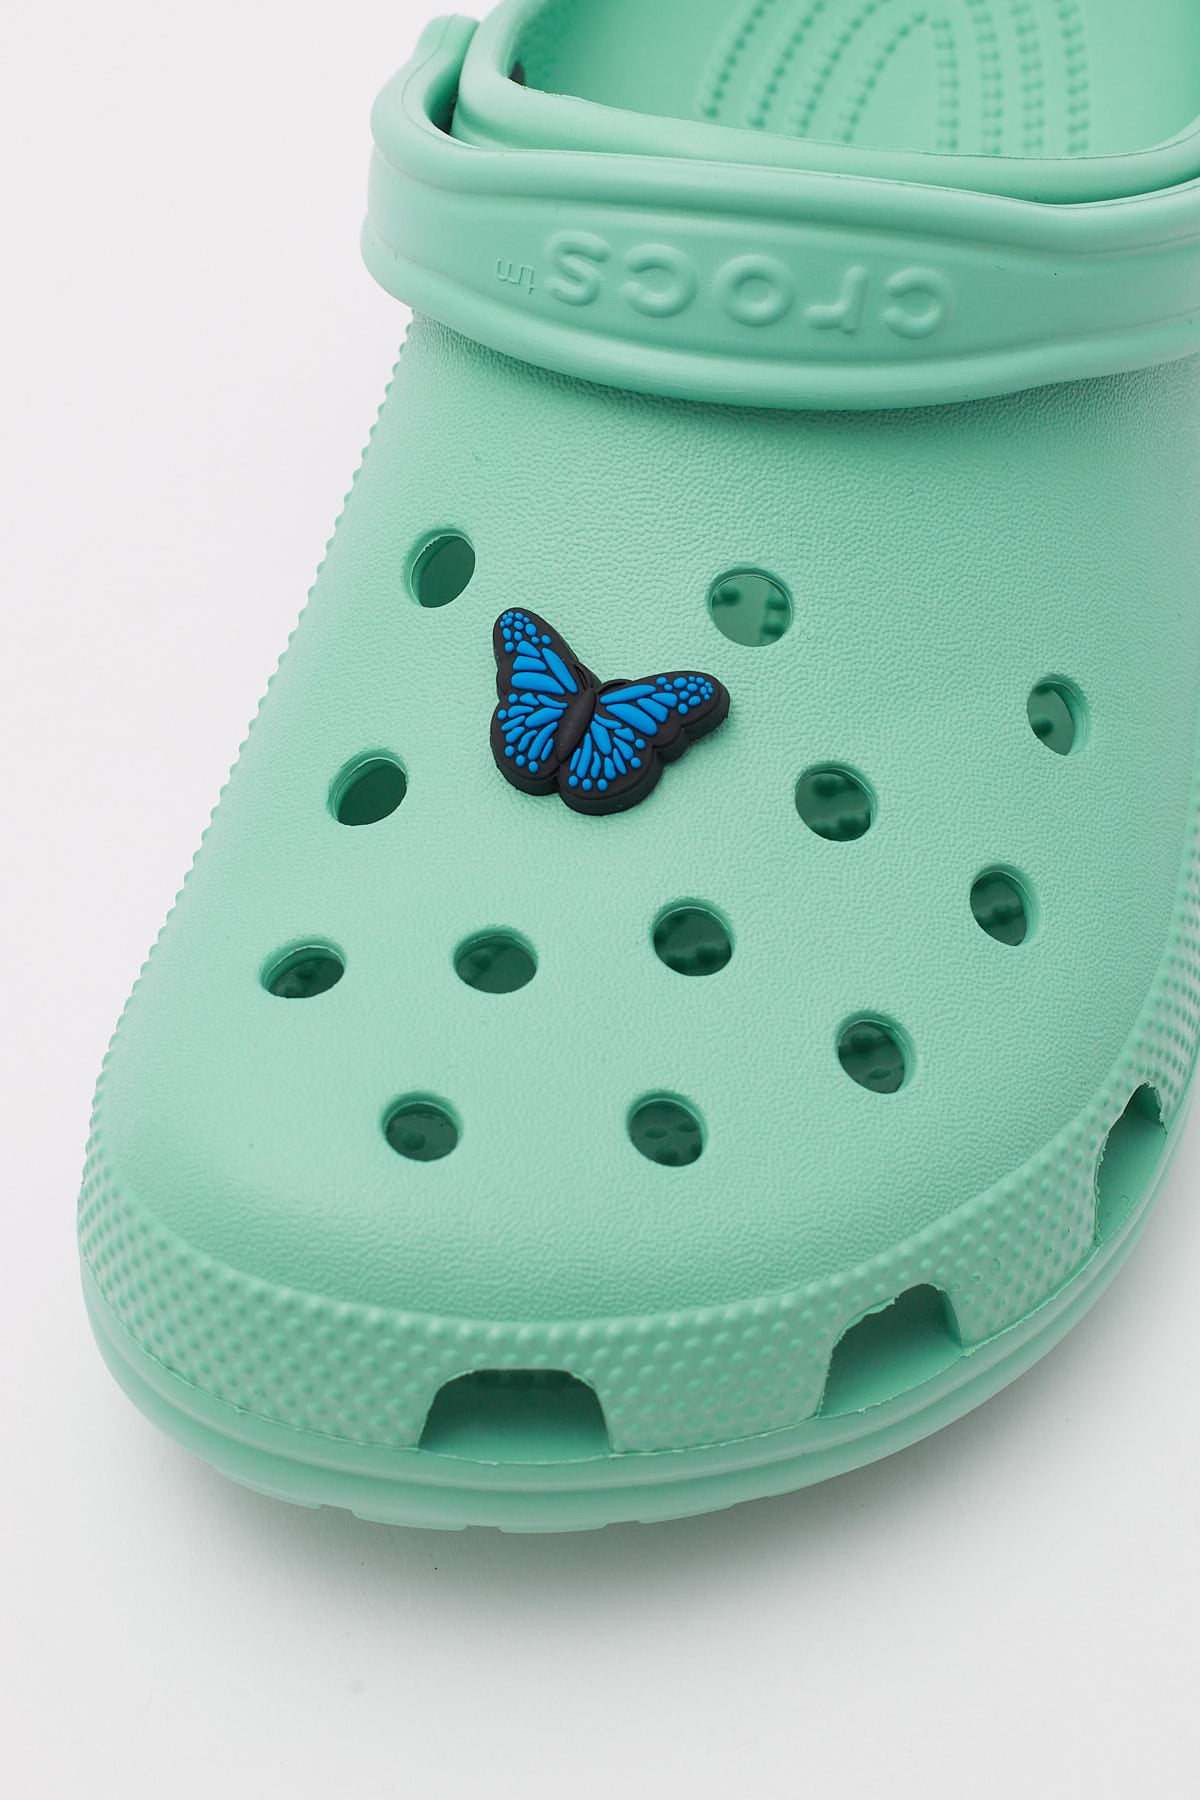 Crocs Blue Butterfly Jibbitz